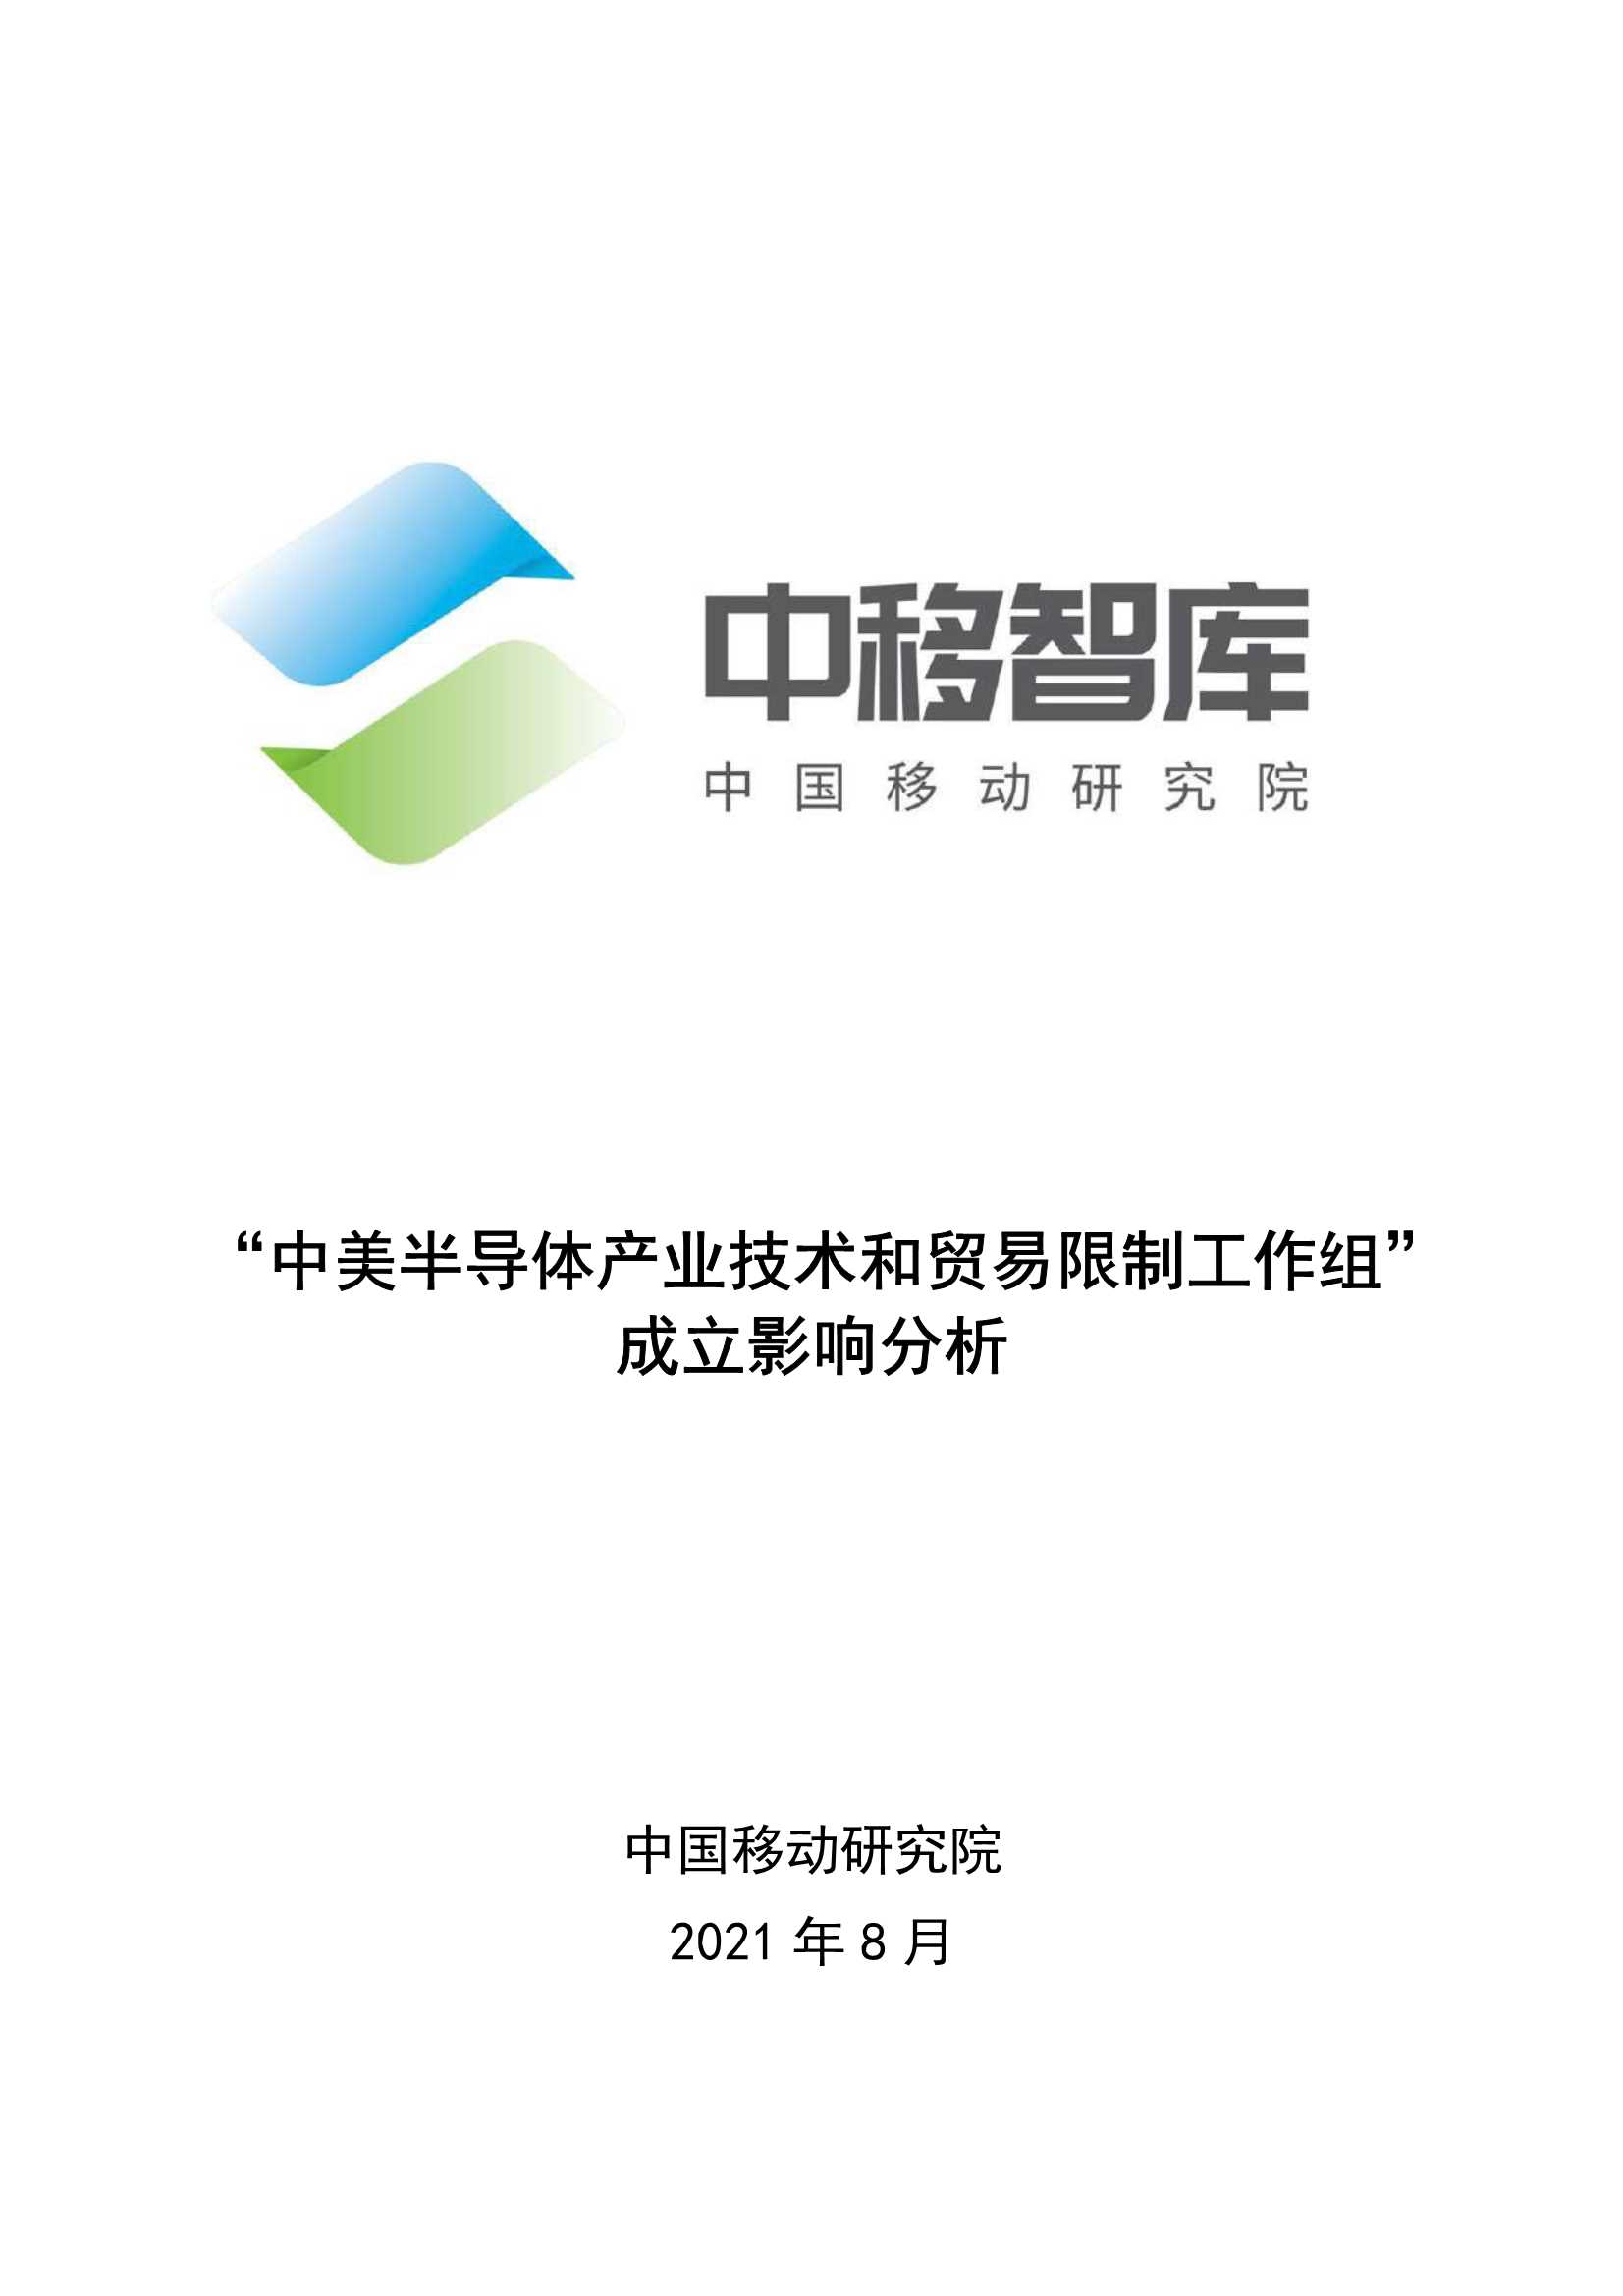 中国移动研究院-“中美半导体产业技术和贸易限制工作组”成立影响分析-2021.08-11页